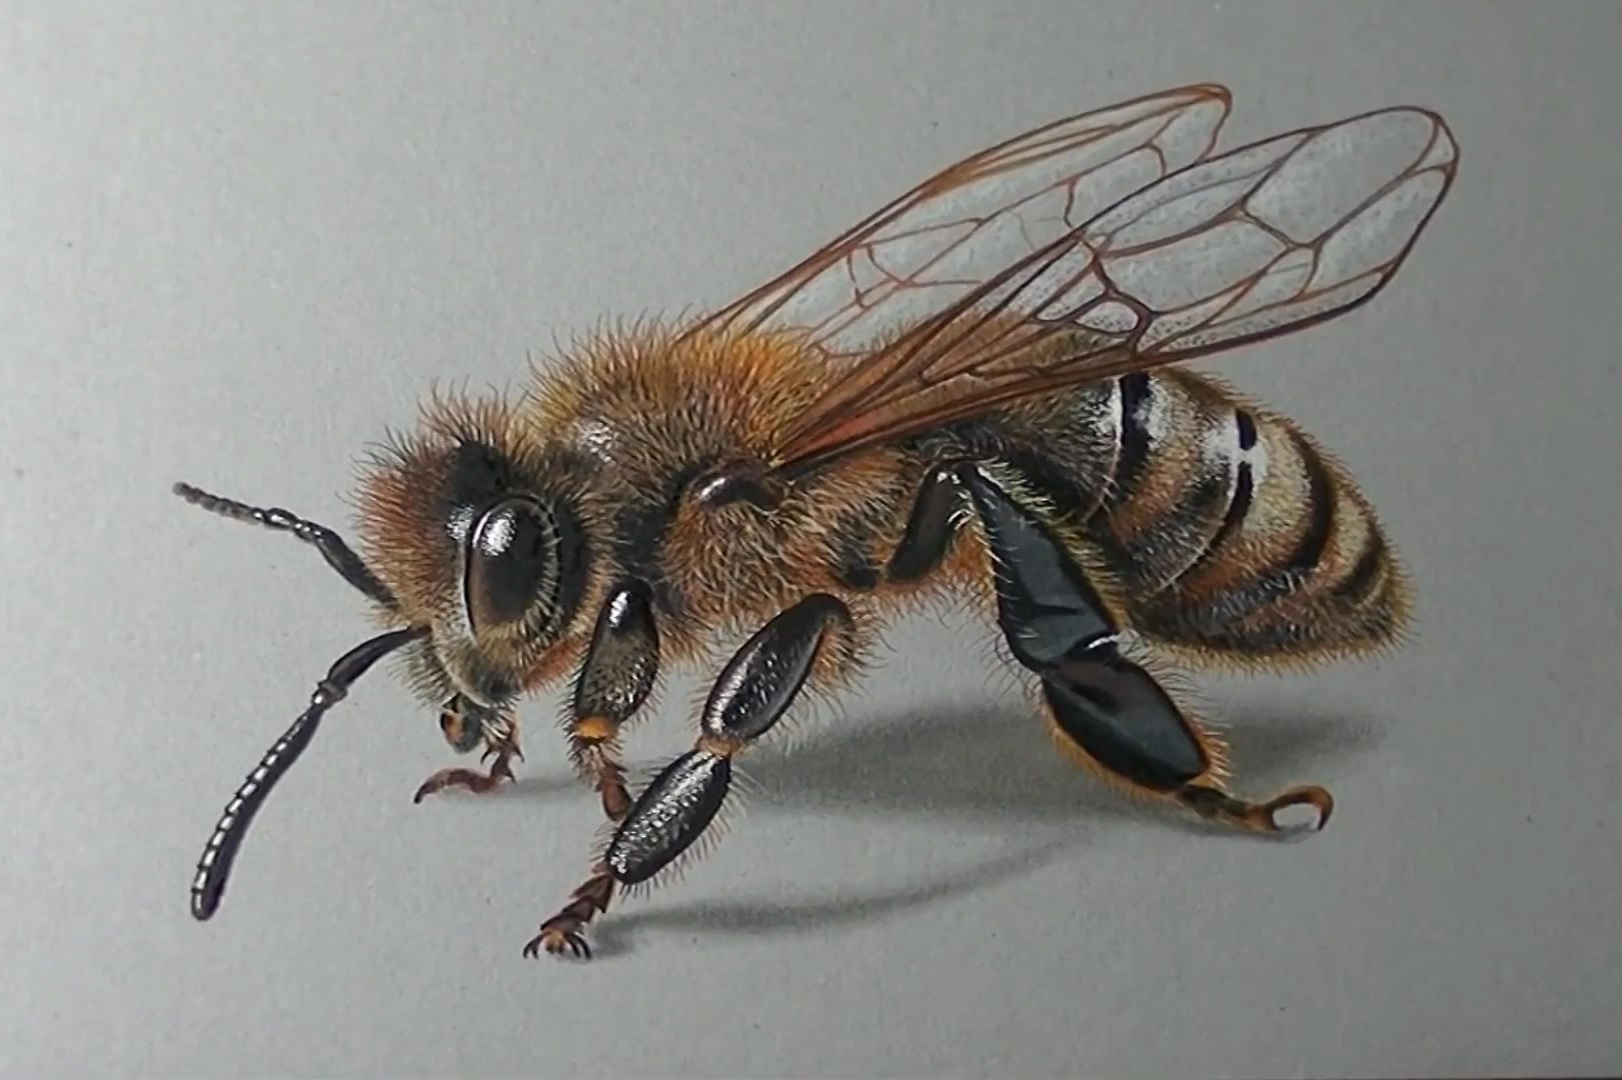 小蜜蜂创意画教案图片